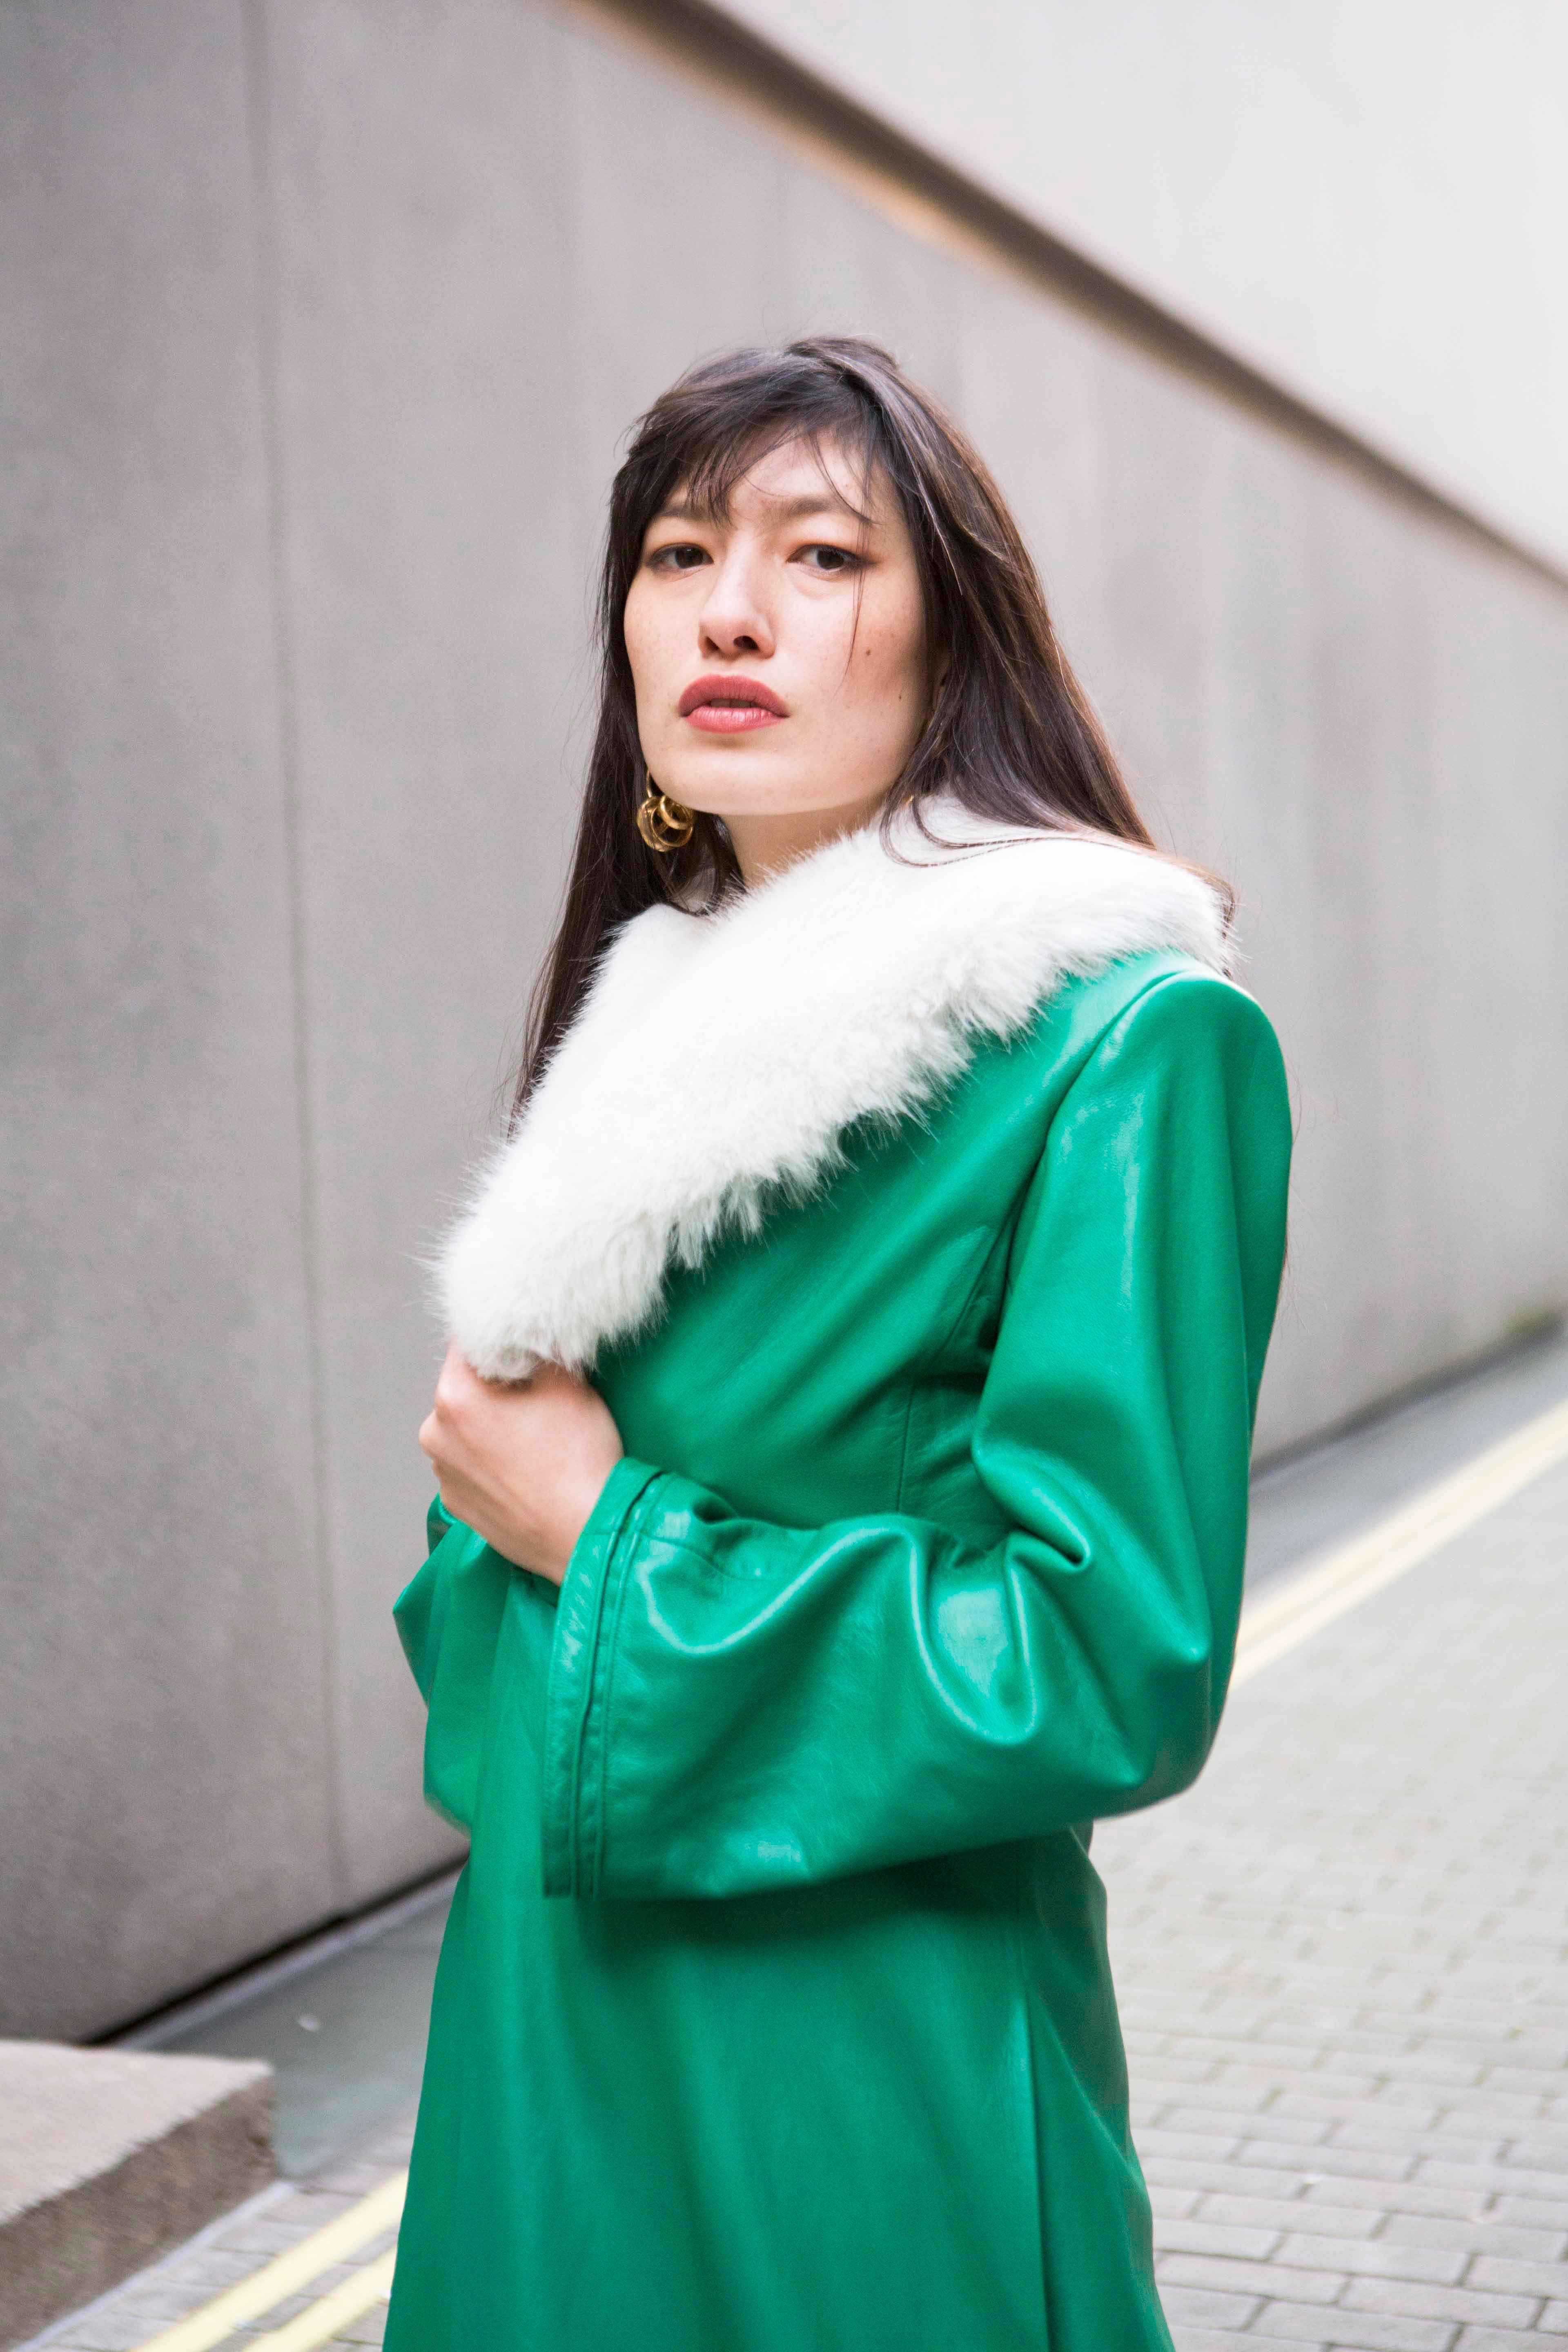 Verheyen London Edward Leather Coat in Green & White Faux Fur - Size 12 UK  For Sale 8